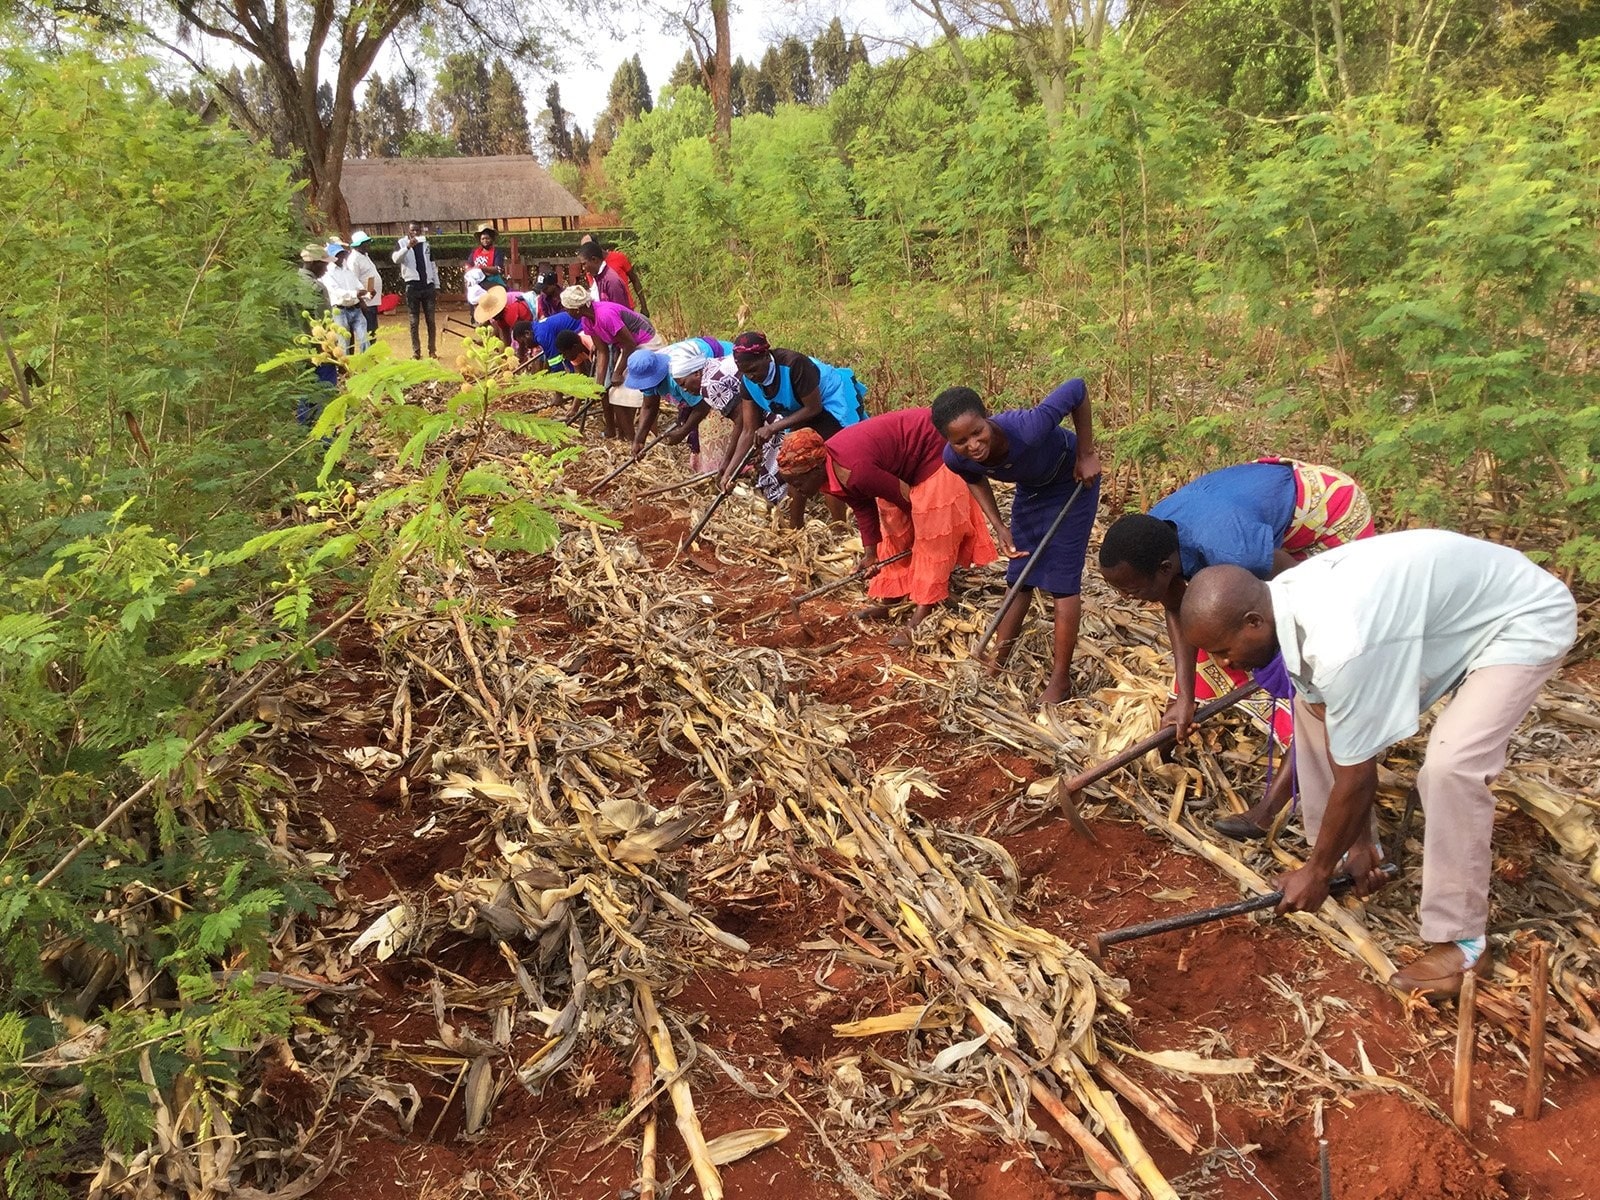 Christian-Based Nonprofit in Zimbabwe Promotes 'God's Way' of Farming